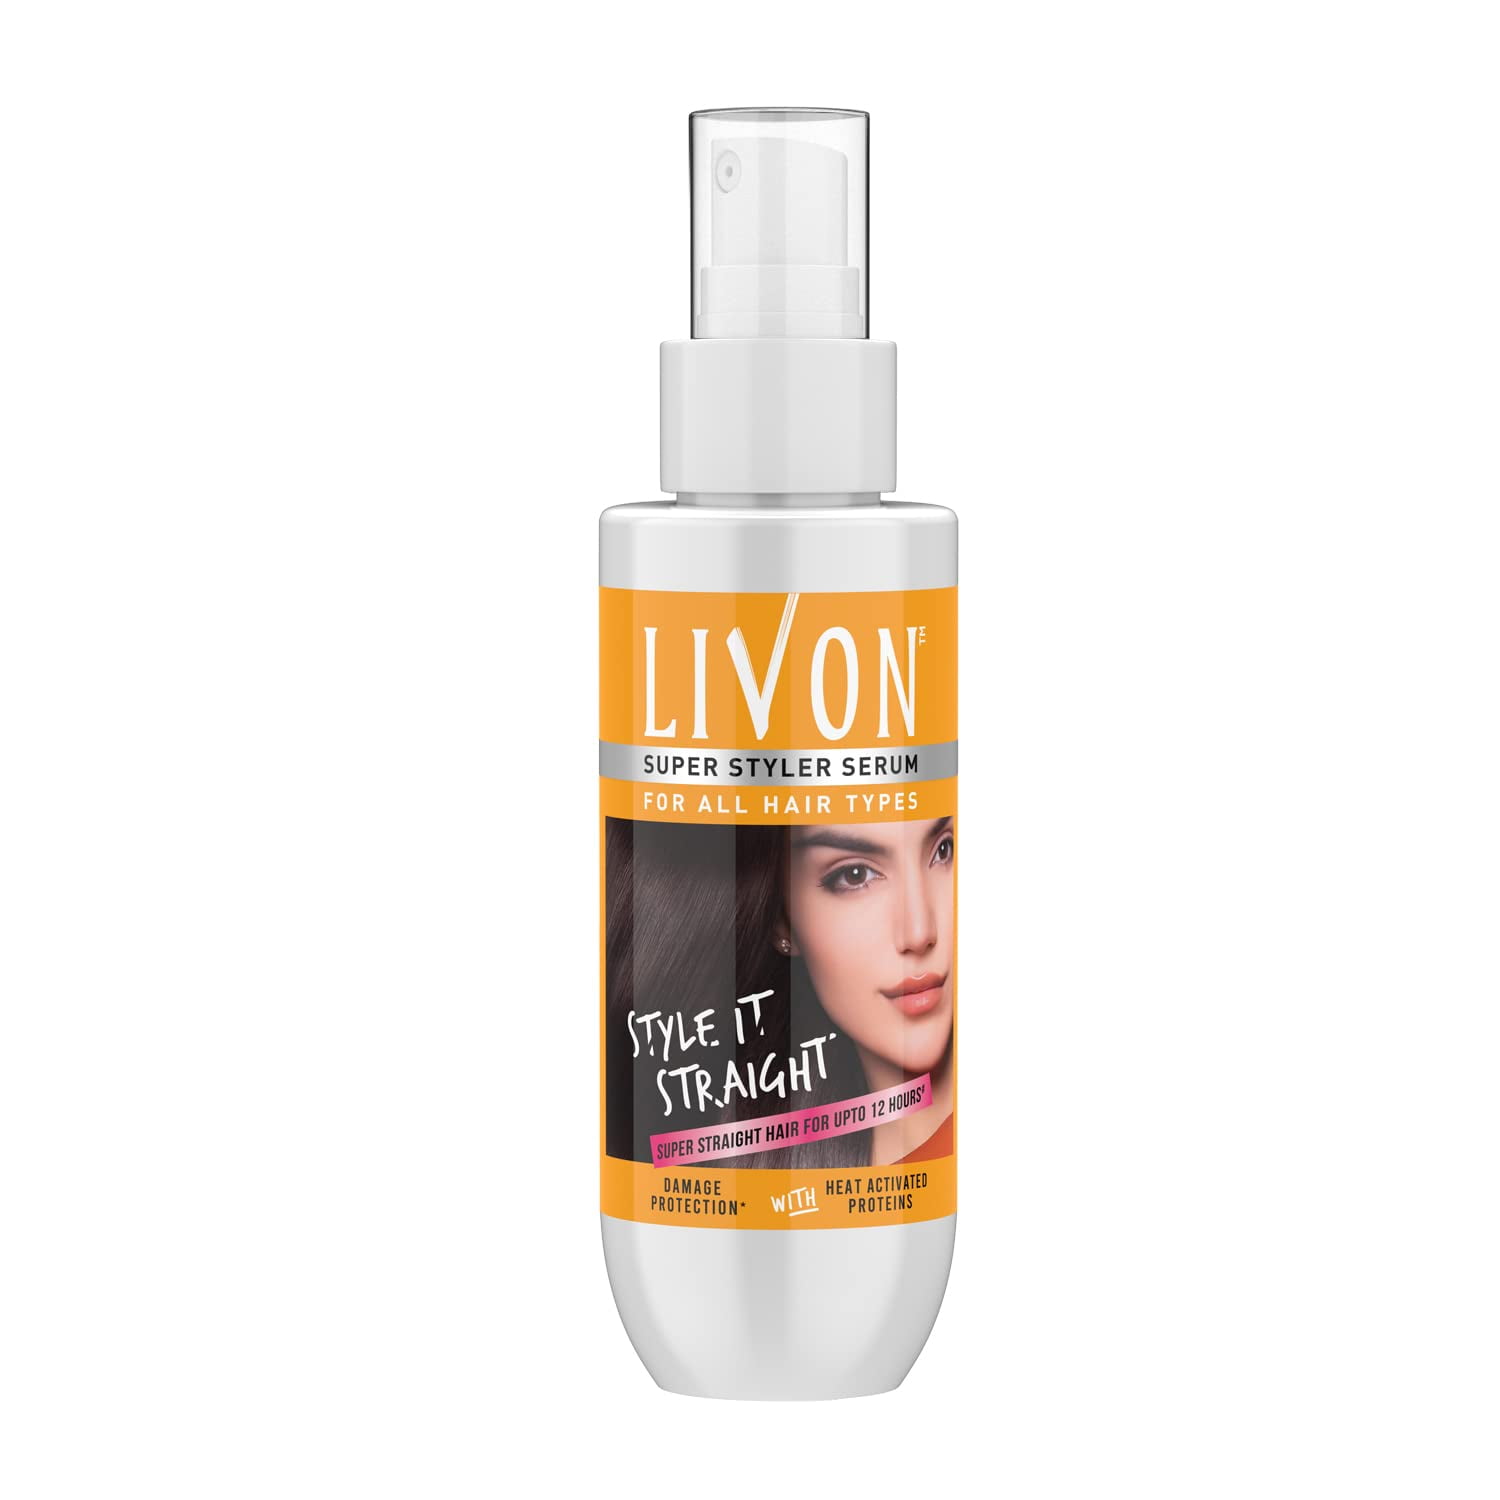 Livon Super Styler Serum for Women & Men for Hair Straightening - 100ml -  